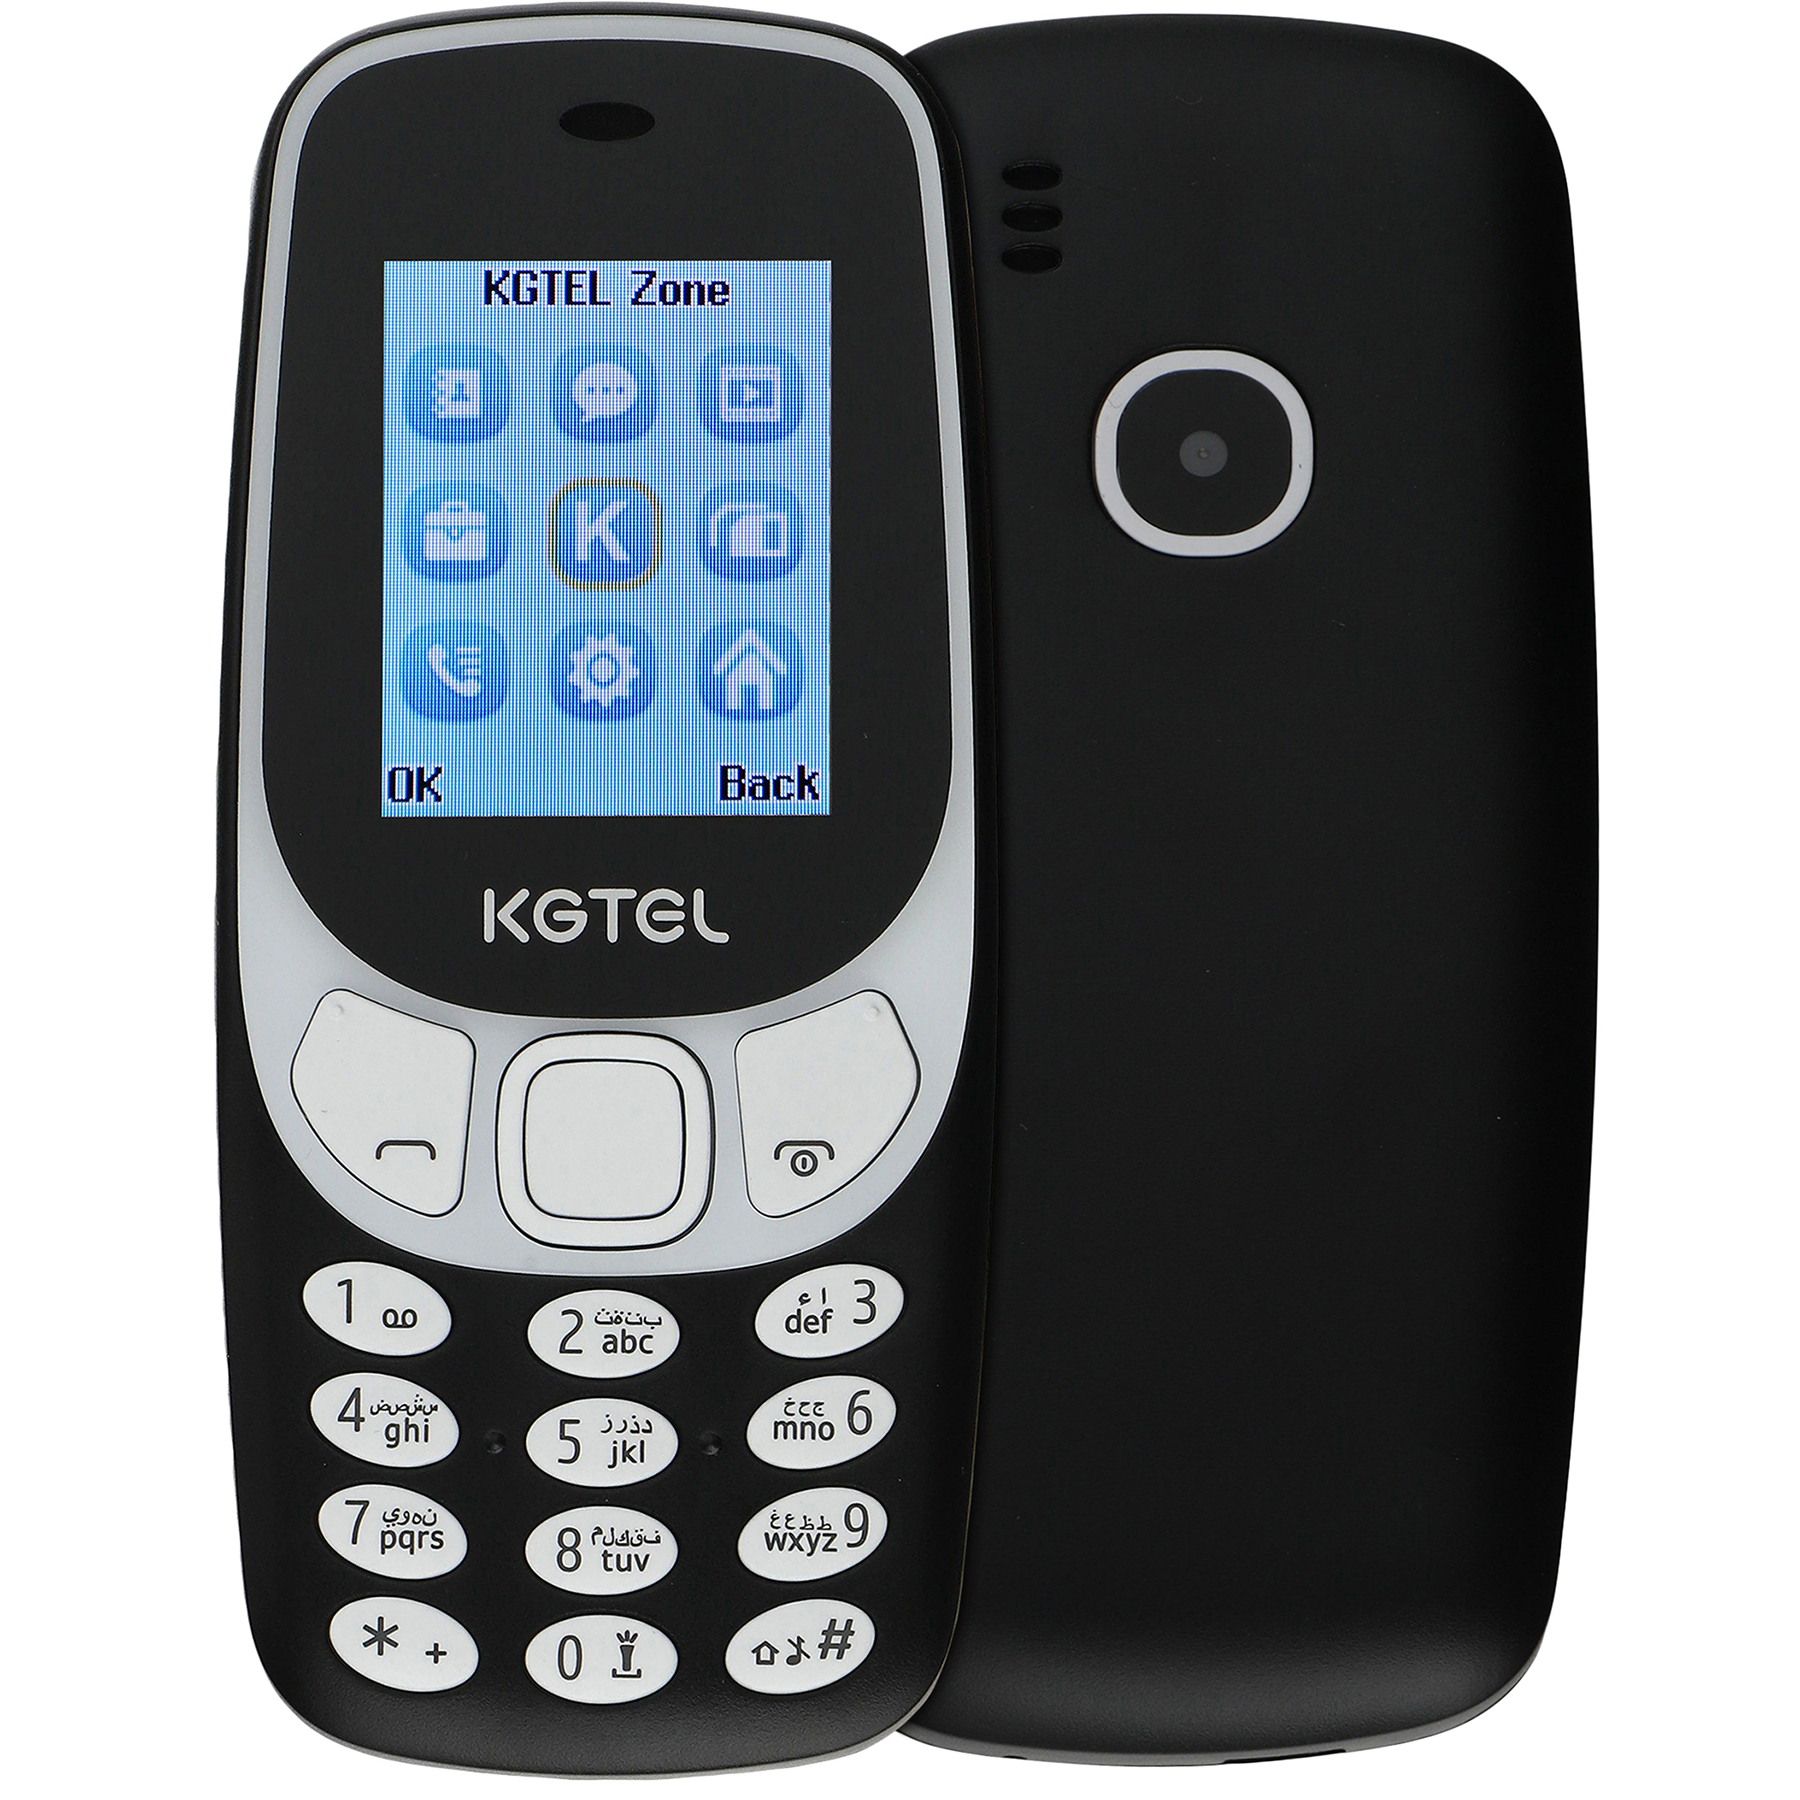 گوشی موبایل کاجیتل مدل KG3310 دو سیم کارت ظرفیت 32 مگابایت و رم 32 مگابایت